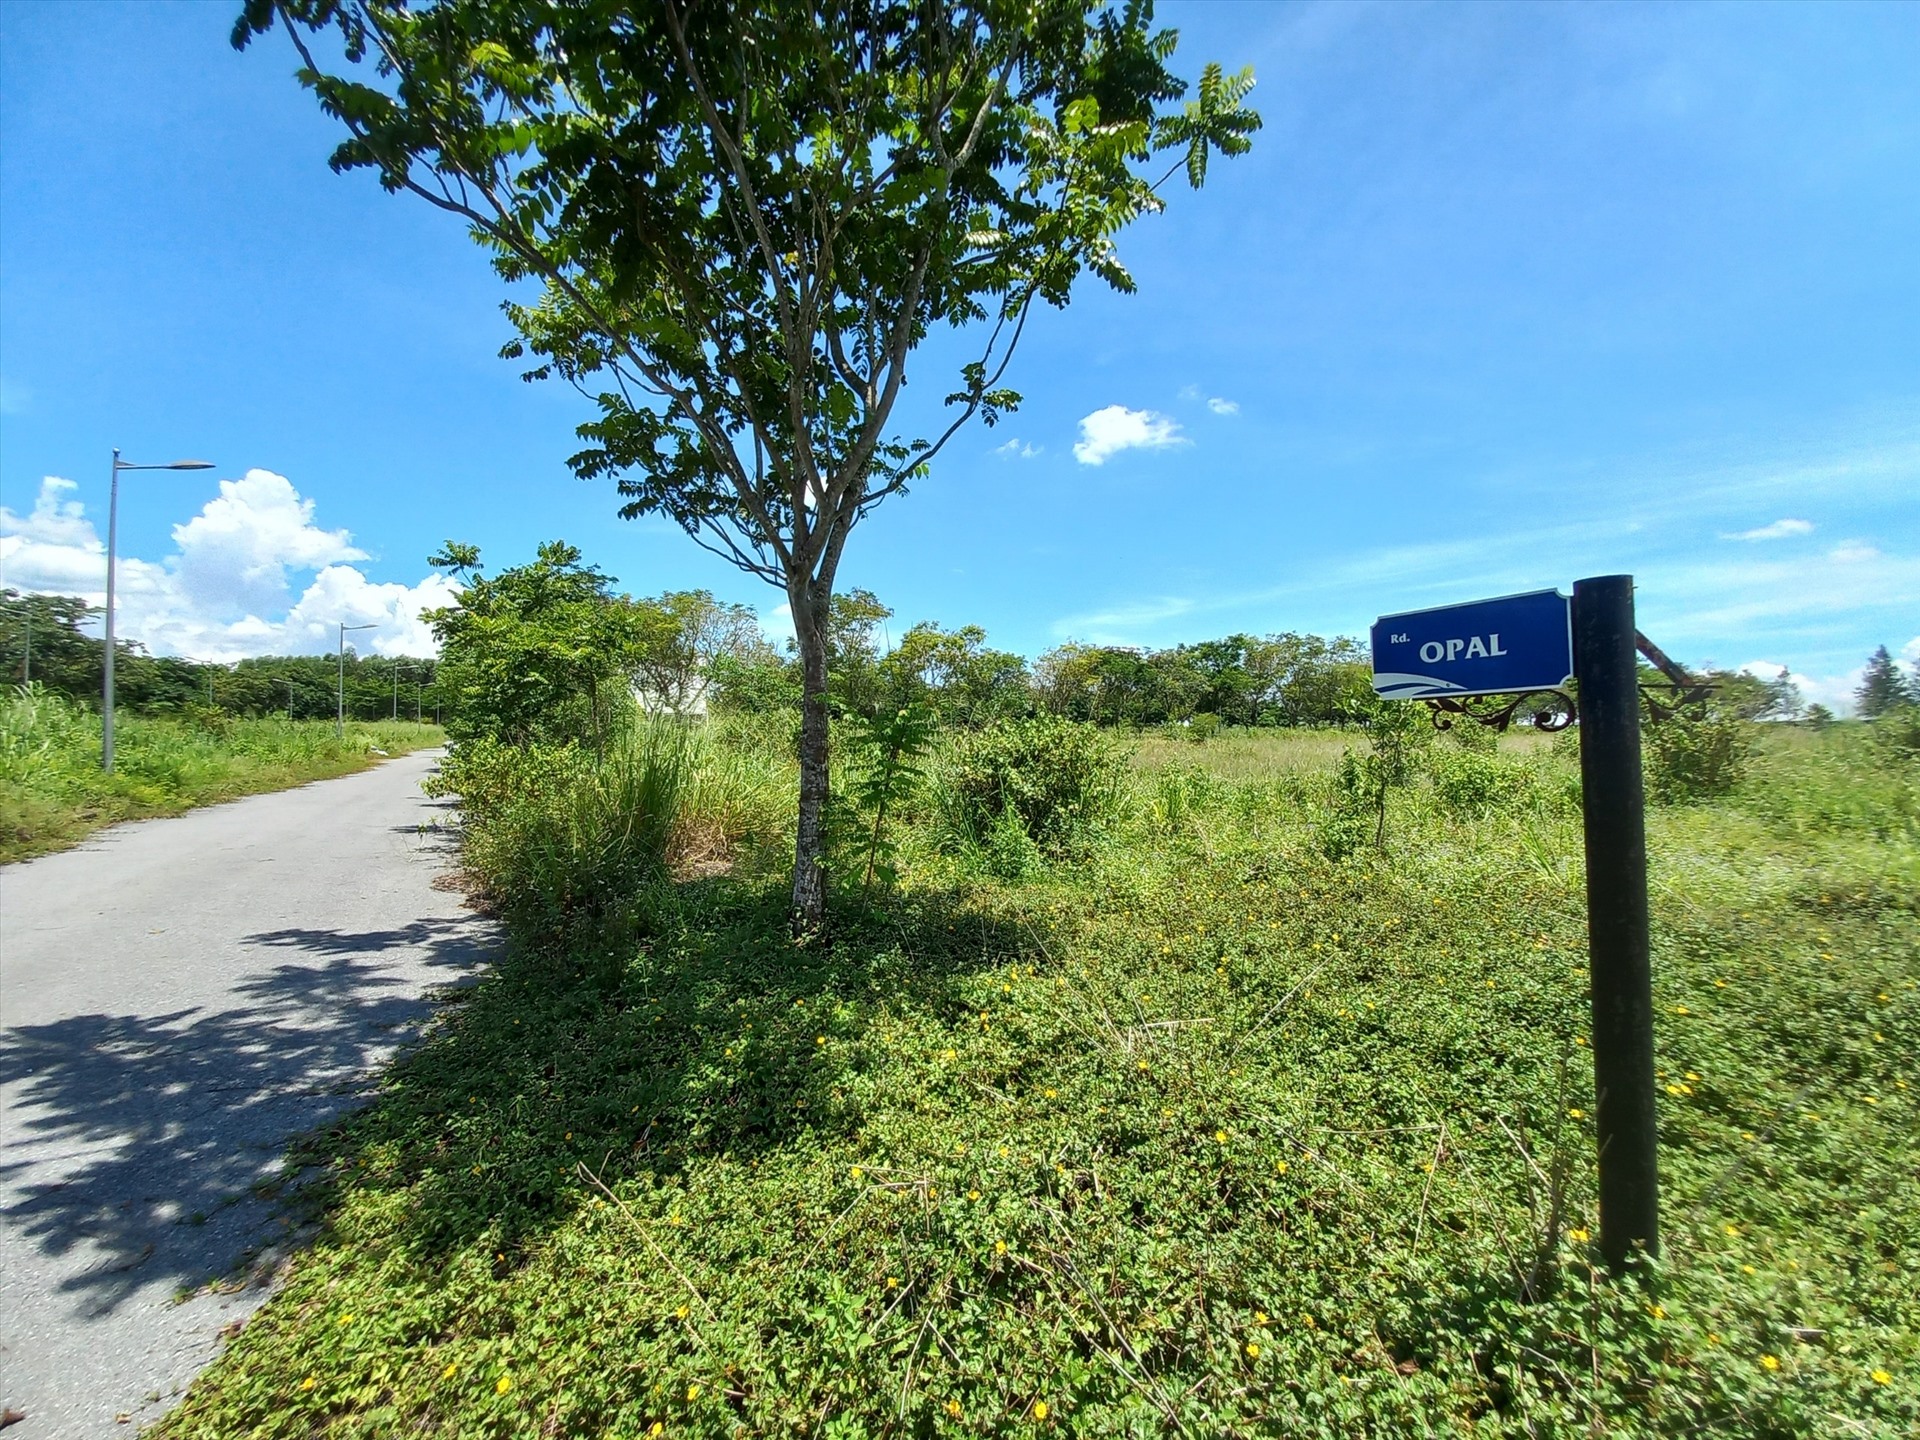 Ngoài ra, theo trả lời của UBND tỉnh Đồng Nai cho người dân mua đất tại dự án trên, trường hợp công ty không thực hiện các hợp đồng đã ký kết thì công dân có quyền khởi kiện ra toà.